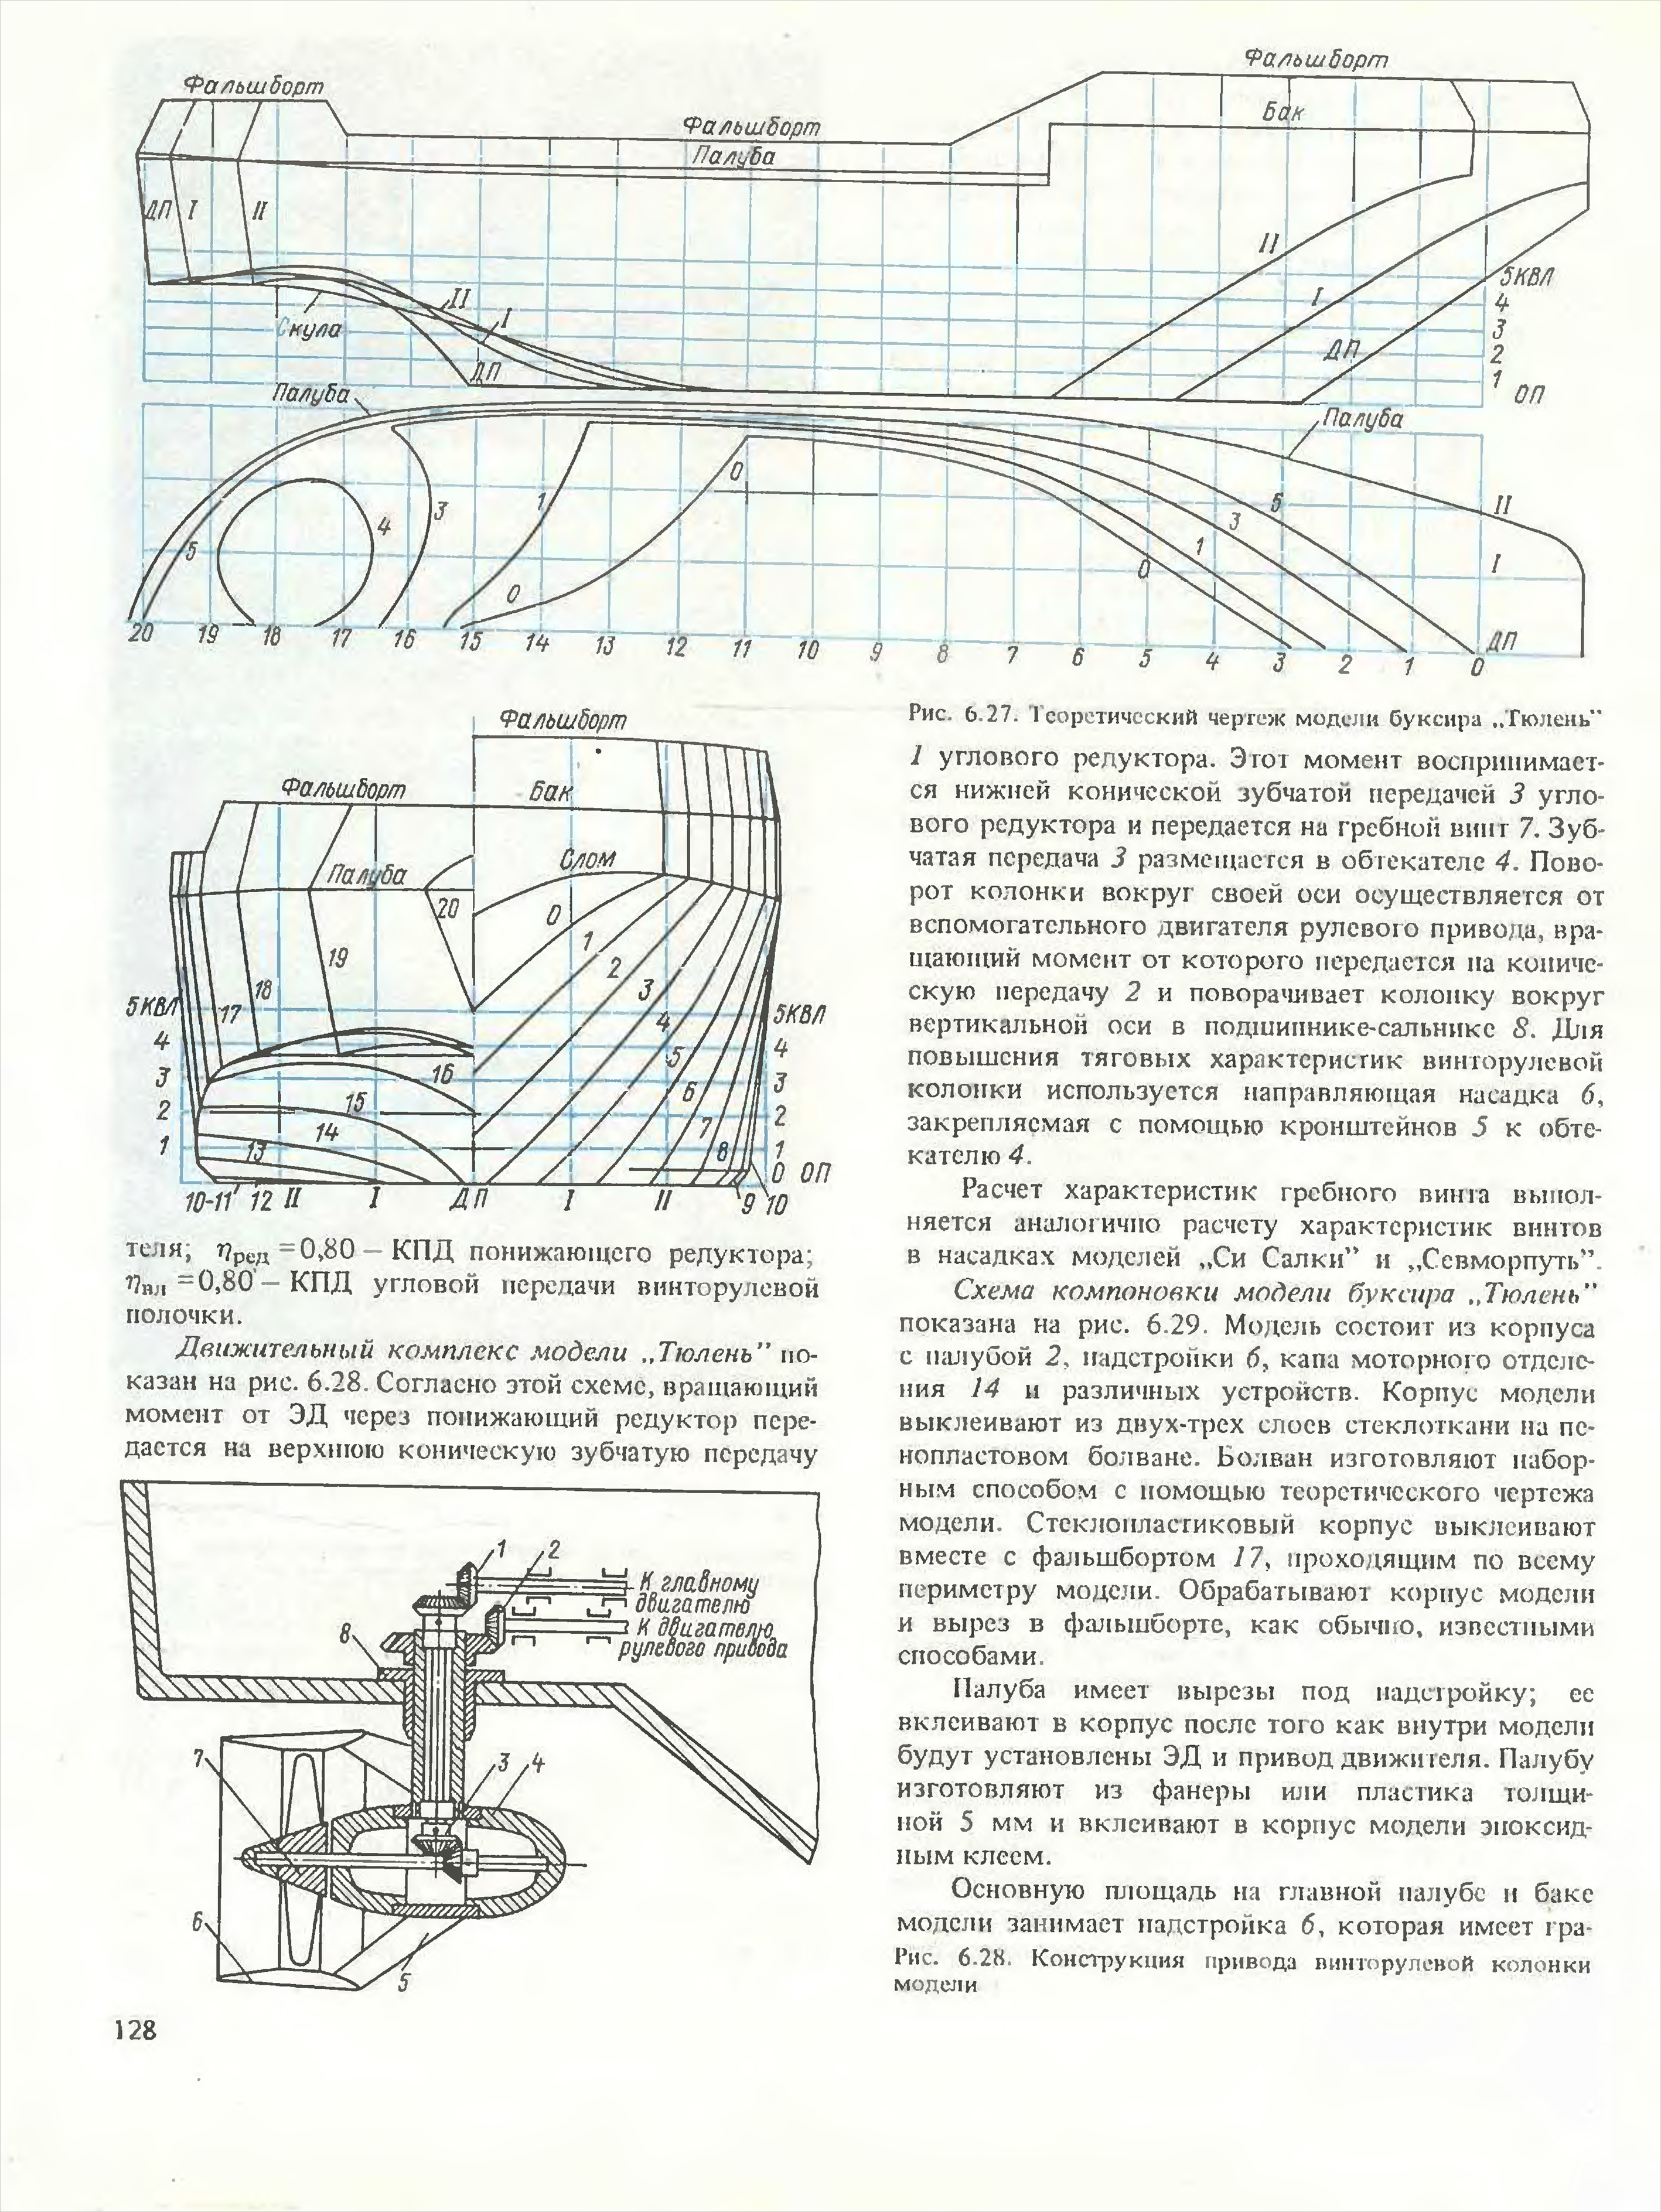 3 Морской буксир Тюлень из книги Б.М. Сахновский. Модели судов новых типов 1987г.jpg